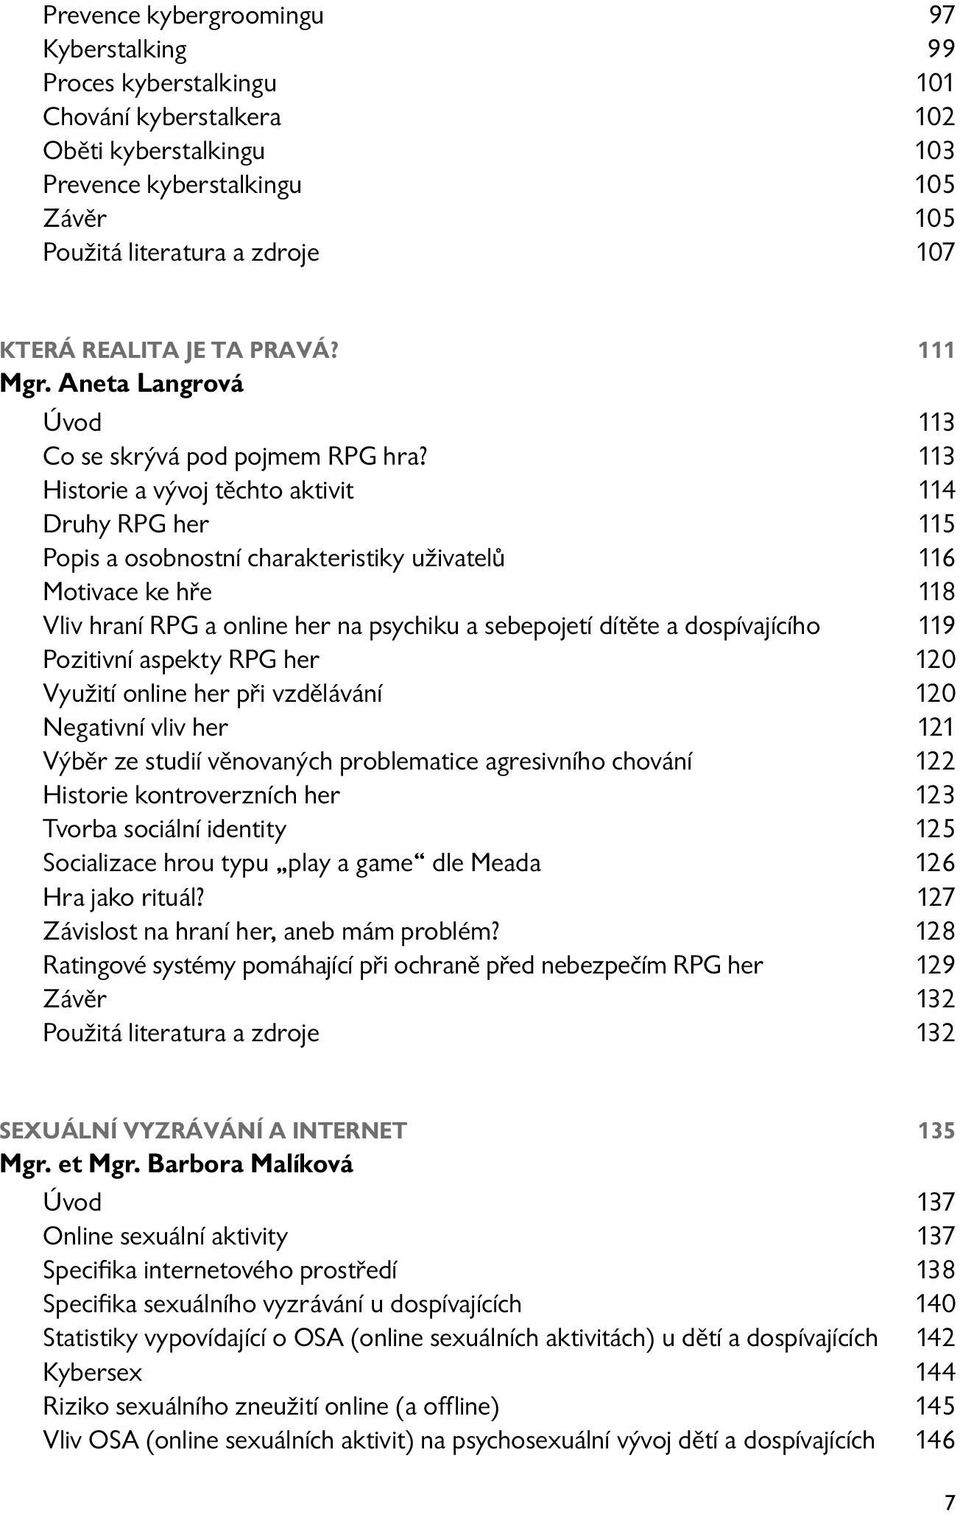 113 Historie a vývoj těchto aktivit 114 Druhy RPG her 115 Popis a osobnostní charakteristiky uživatelů 116 Motivace ke hře 118 Vliv hraní RPG a online her na psychiku a sebepojetí dítěte a